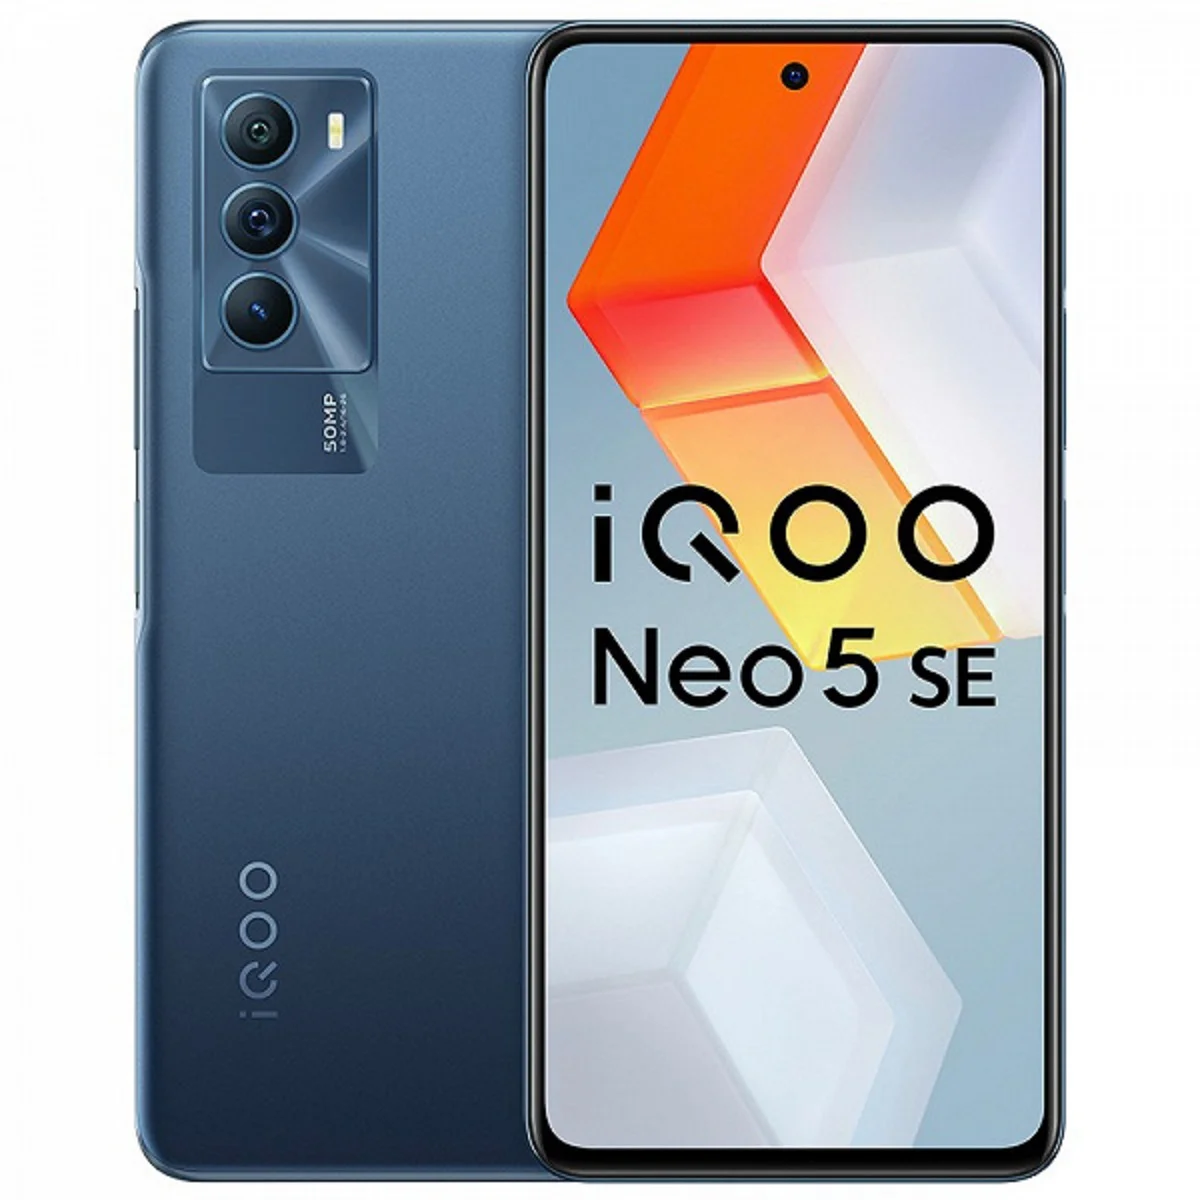 Представлены доступные флагманы iQOO Neo 5S и Neo 5SE по цене от 25 000 рублей - фото 2